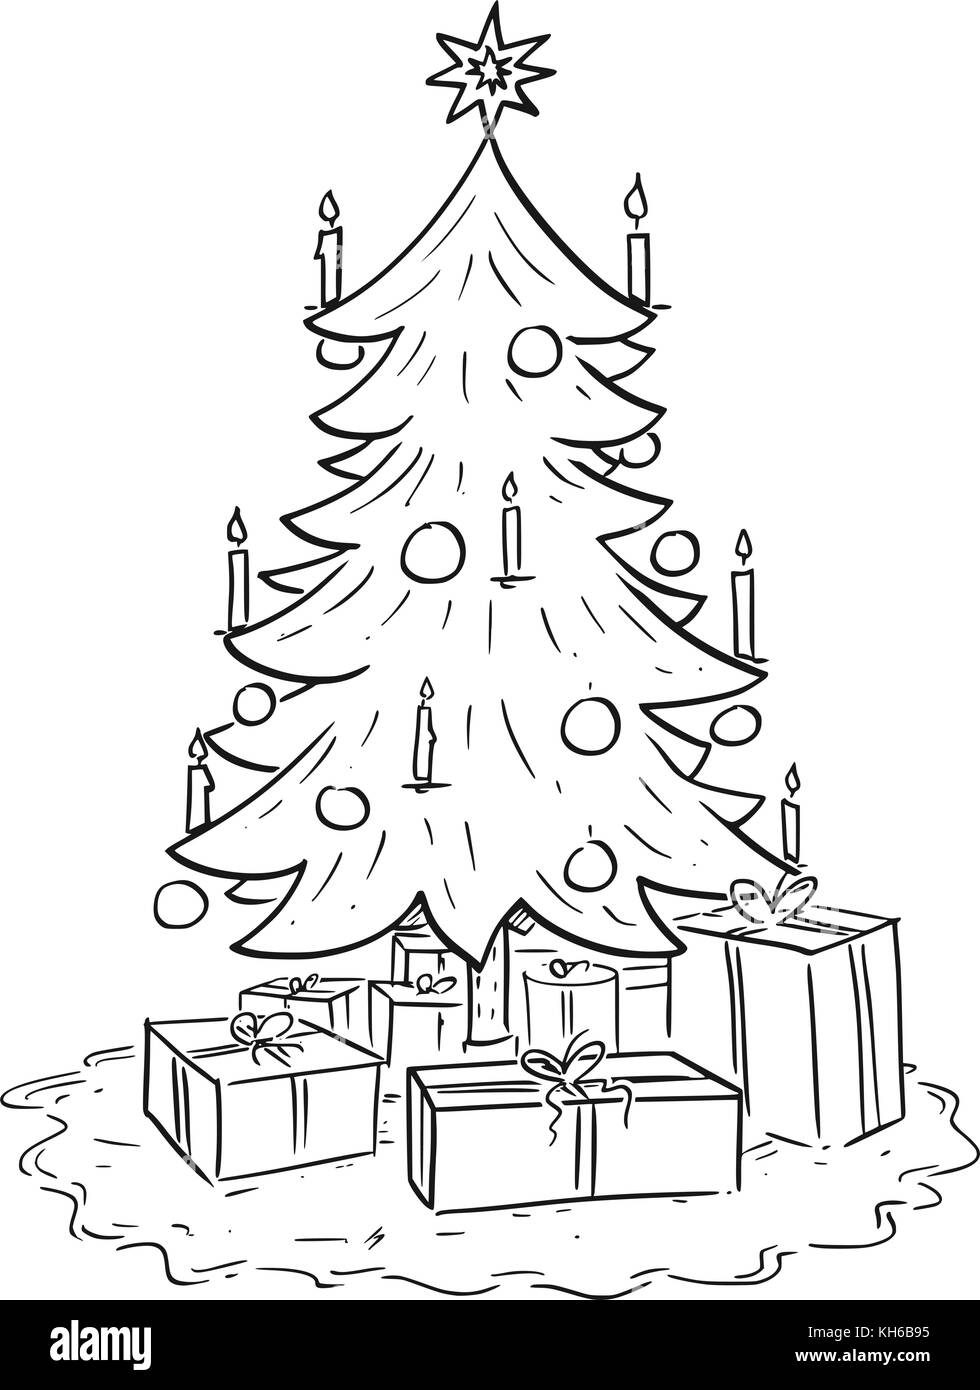 Cartoon zeichnen Abbildung: Weihnachten Fichte Tanne mit Geschenken oder  oder Geschenke Stock-Vektorgrafik - Alamy